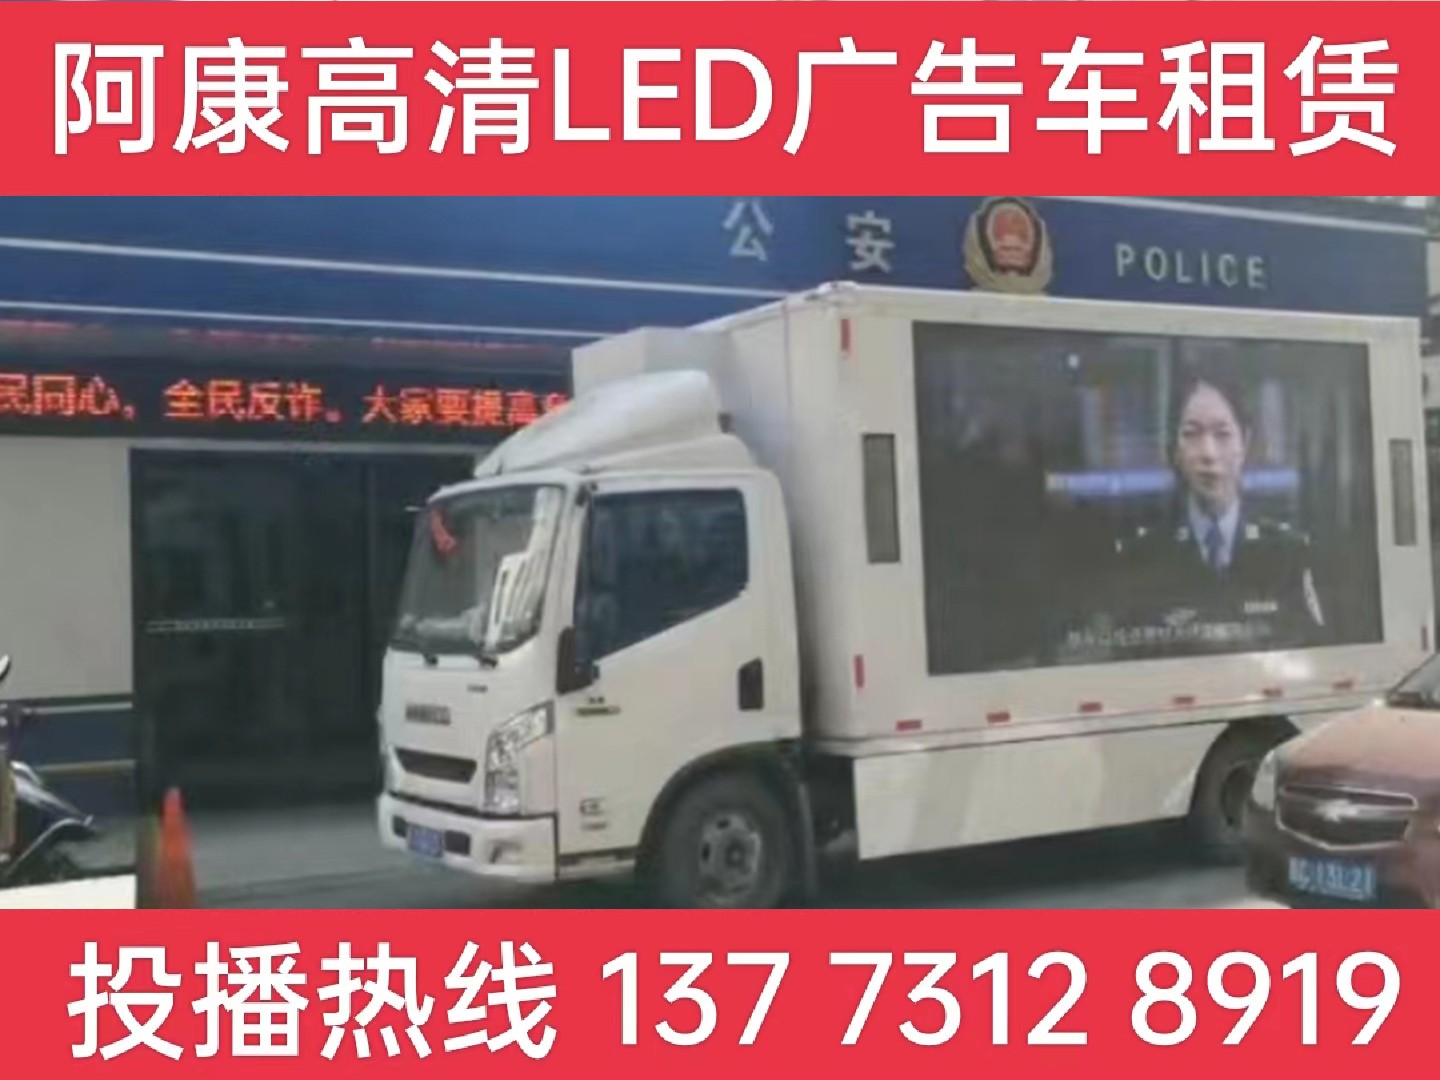 溧水区LED广告车租赁-反诈宣传